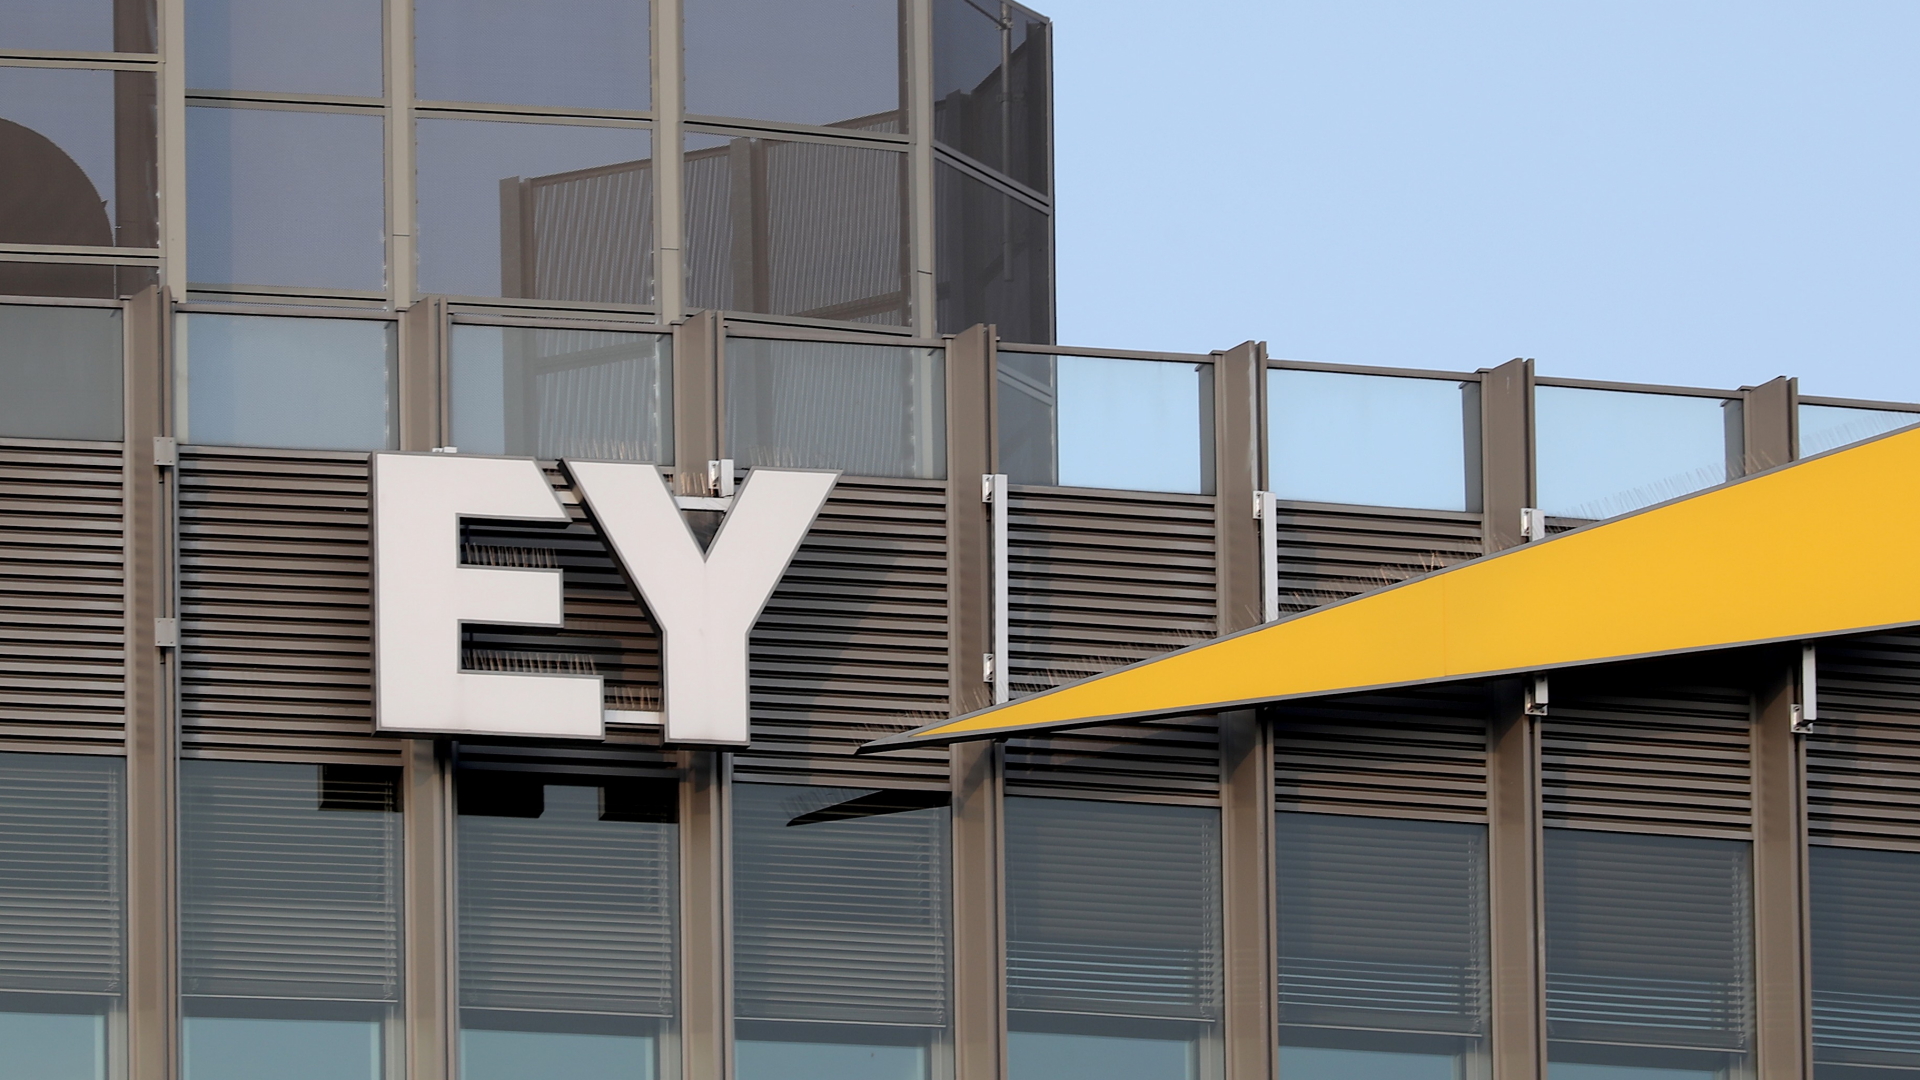 Am Bürogebäude des Wirtschaftsprüfers in Berlin hängt das Logo "EY" 